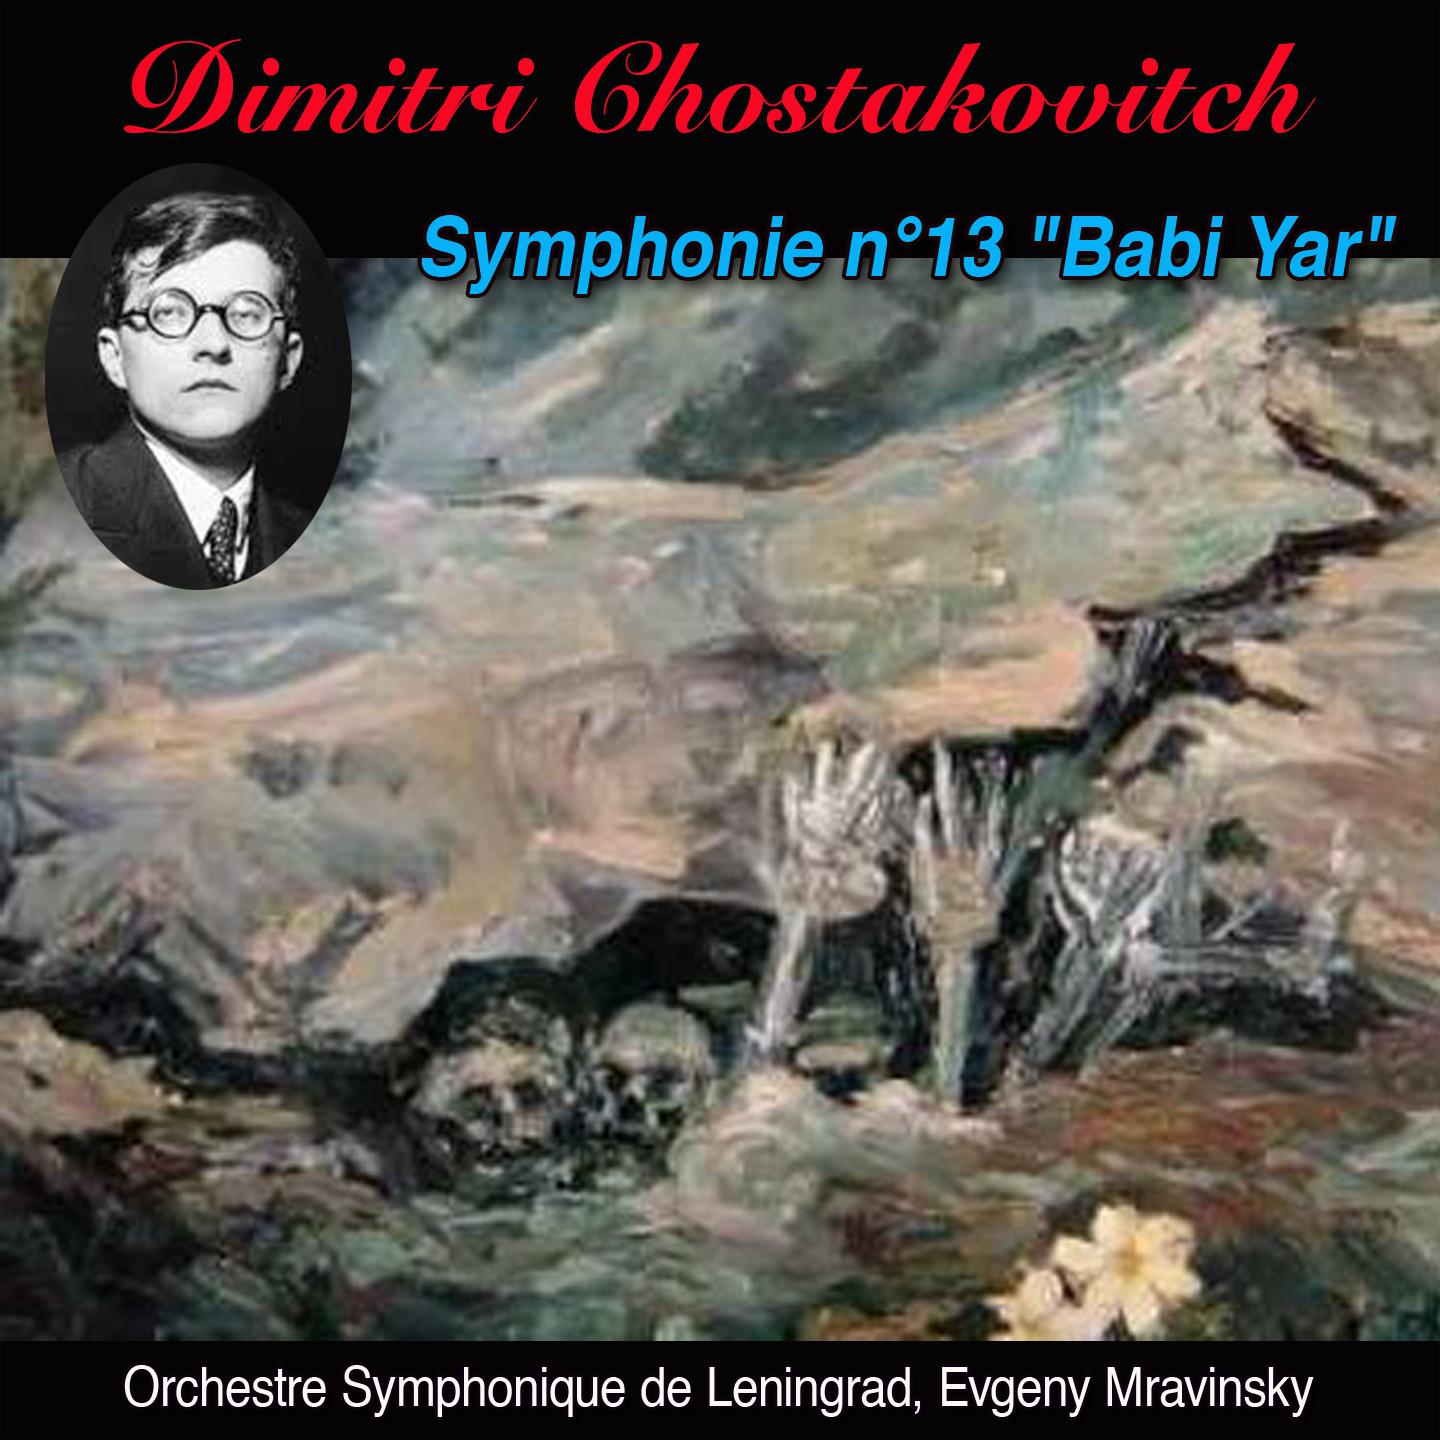 Babi yar adagio non troppo (Symphonie n° 13 op. 113 "Babi yar")